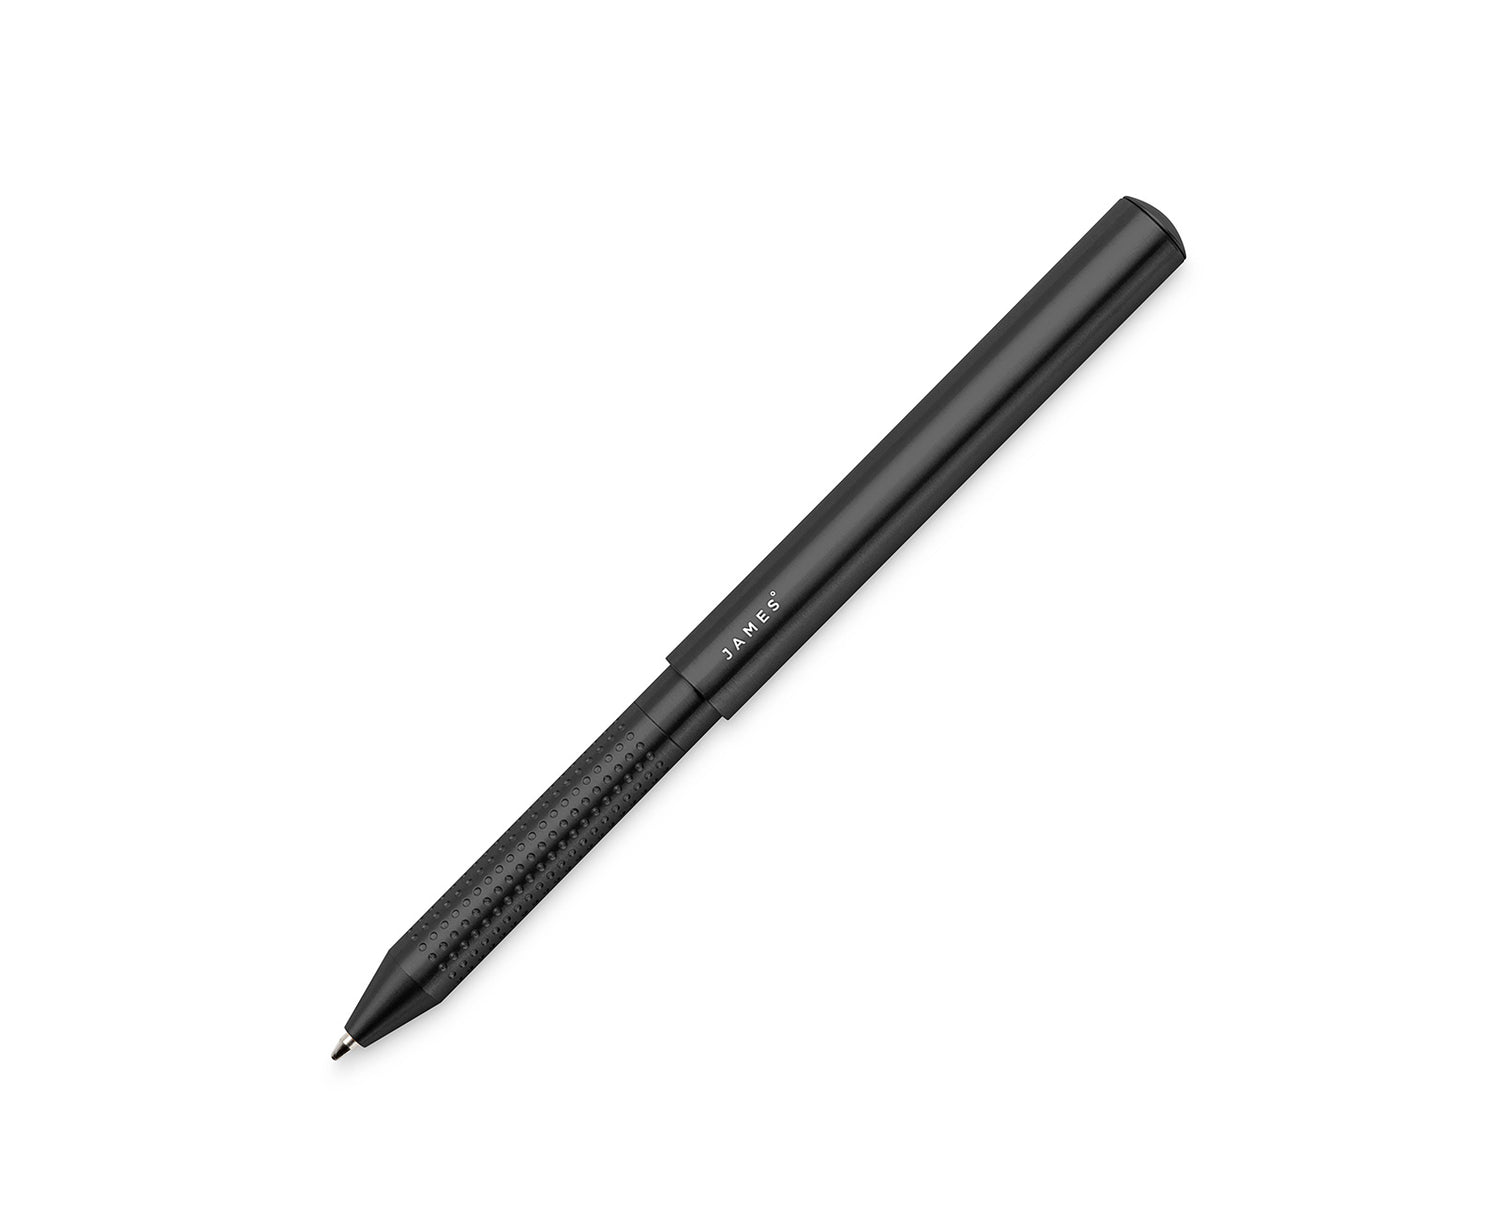 Stilwell full pen image in black color.